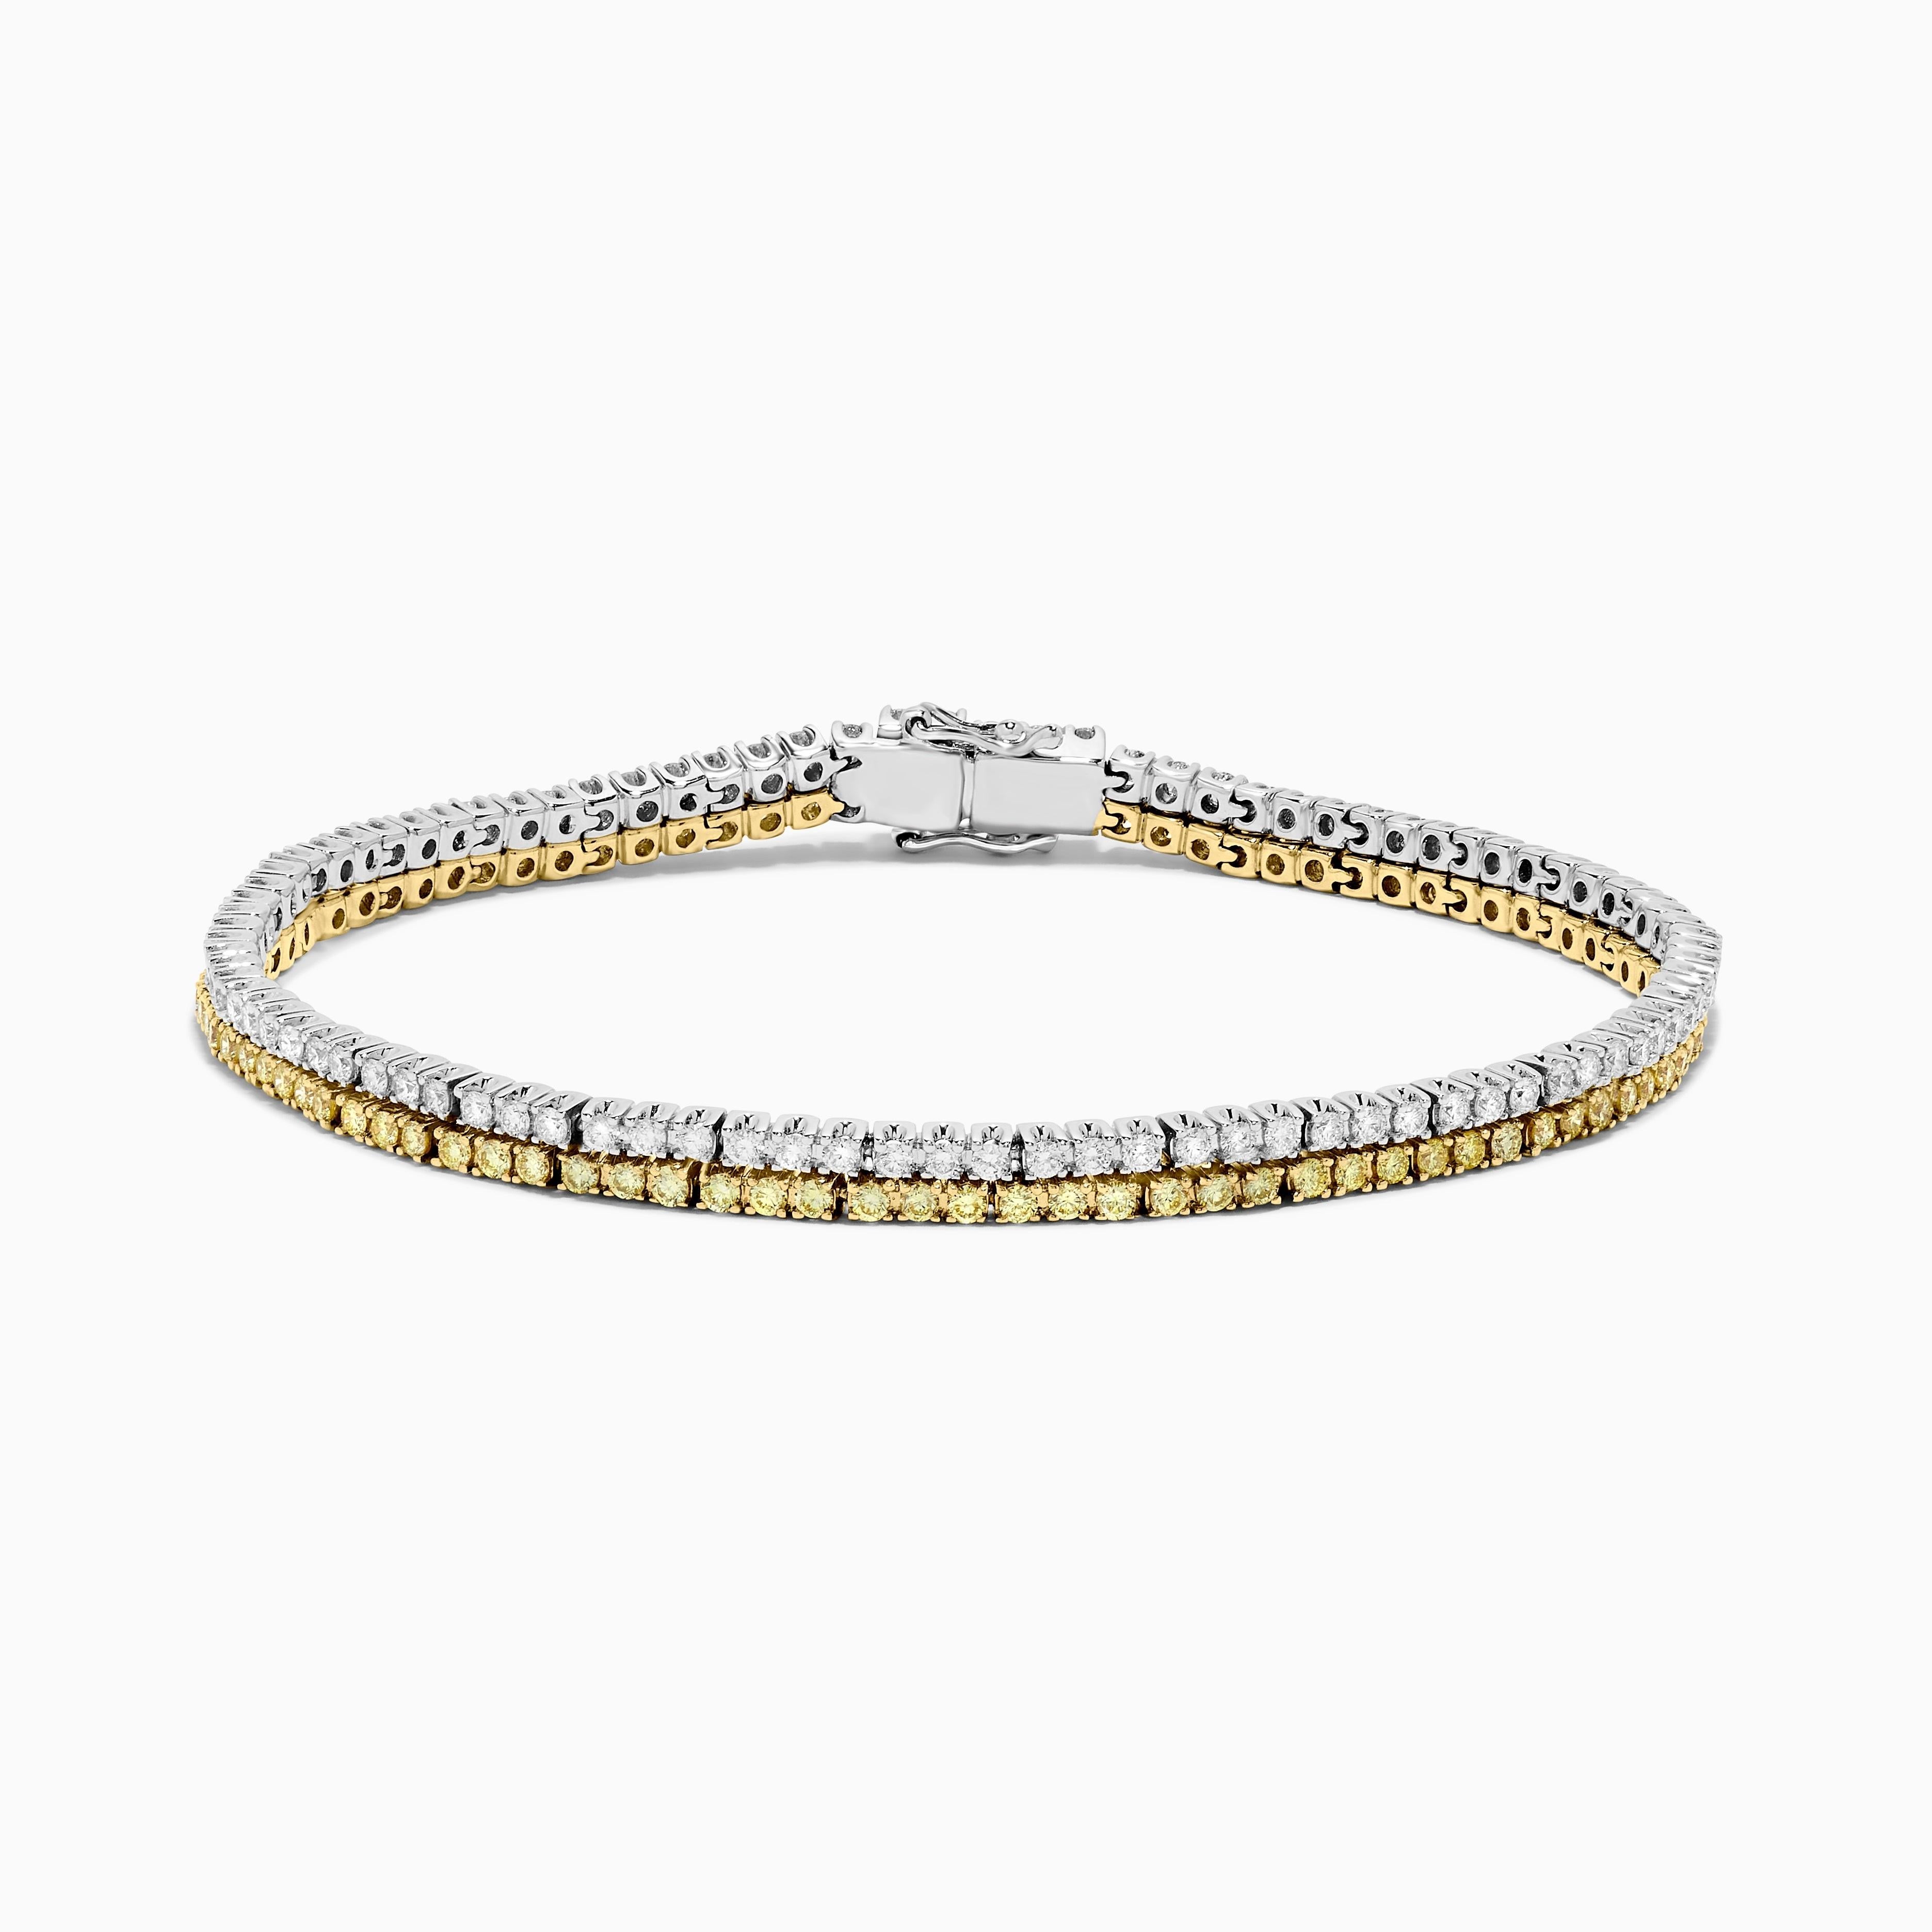 Le bracelet classique en diamants de Raregemworld. Monté dans une belle monture en or jaune et blanc 18 carats avec une mêlée de diamants jaunes de taille ronde naturelle complétée par une mêlée de diamants blancs de taille ronde naturelle. Ce